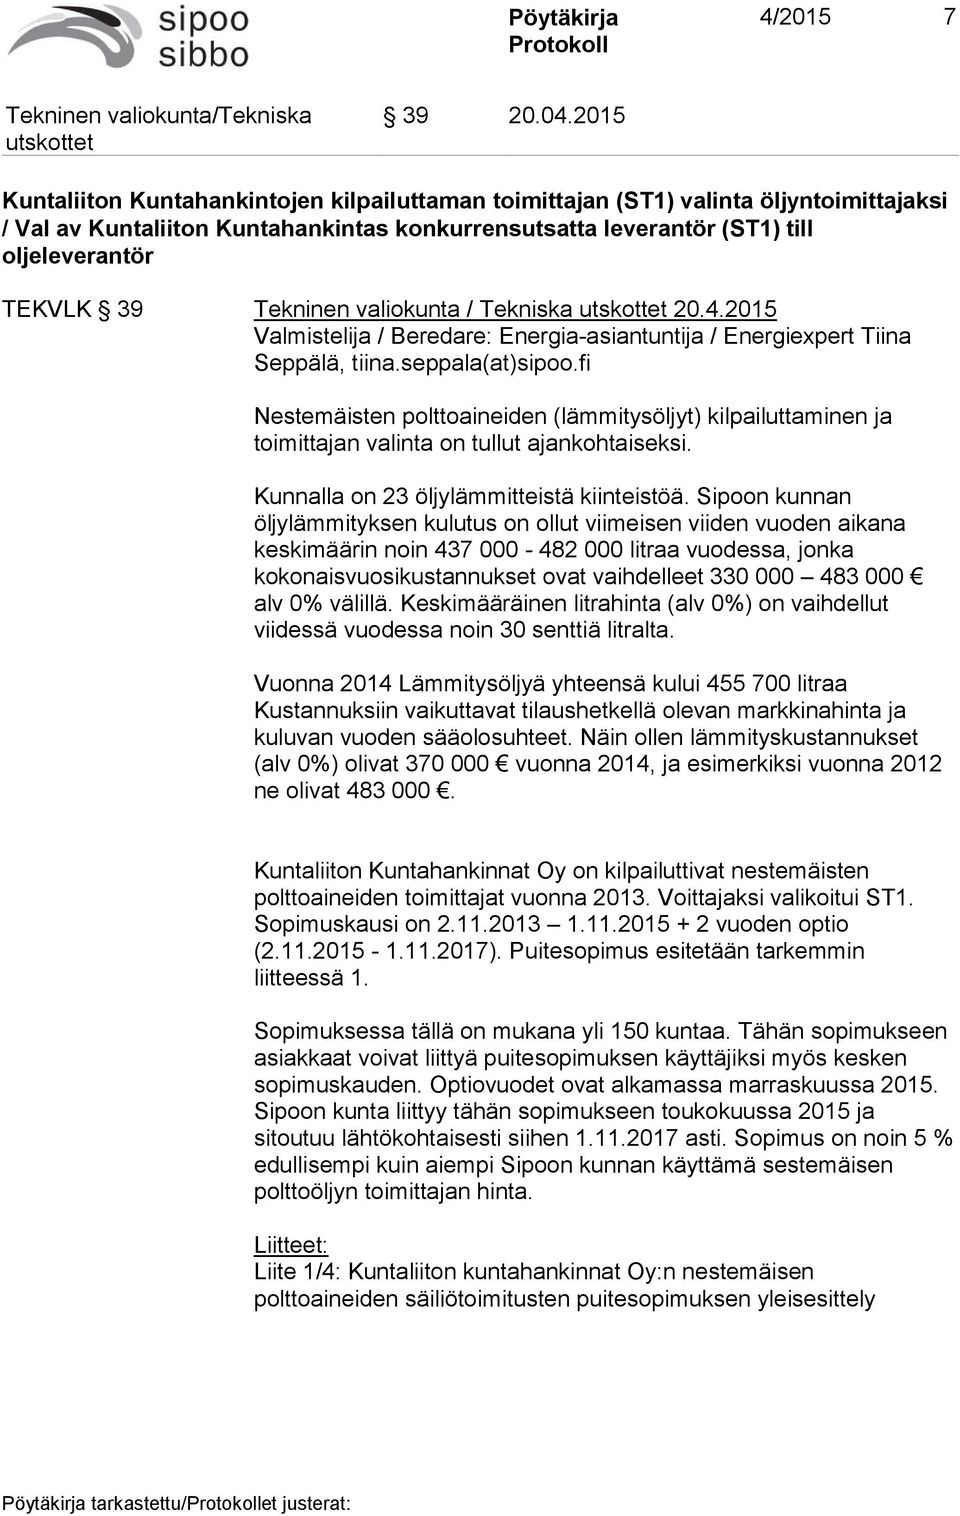 Tekninen valiokunta / Tekniska 20.4.2015 Valmistelija / Beredare: Energia-asiantuntija / Energiexpert Tiina Seppälä, tiina.seppala(at)sipoo.